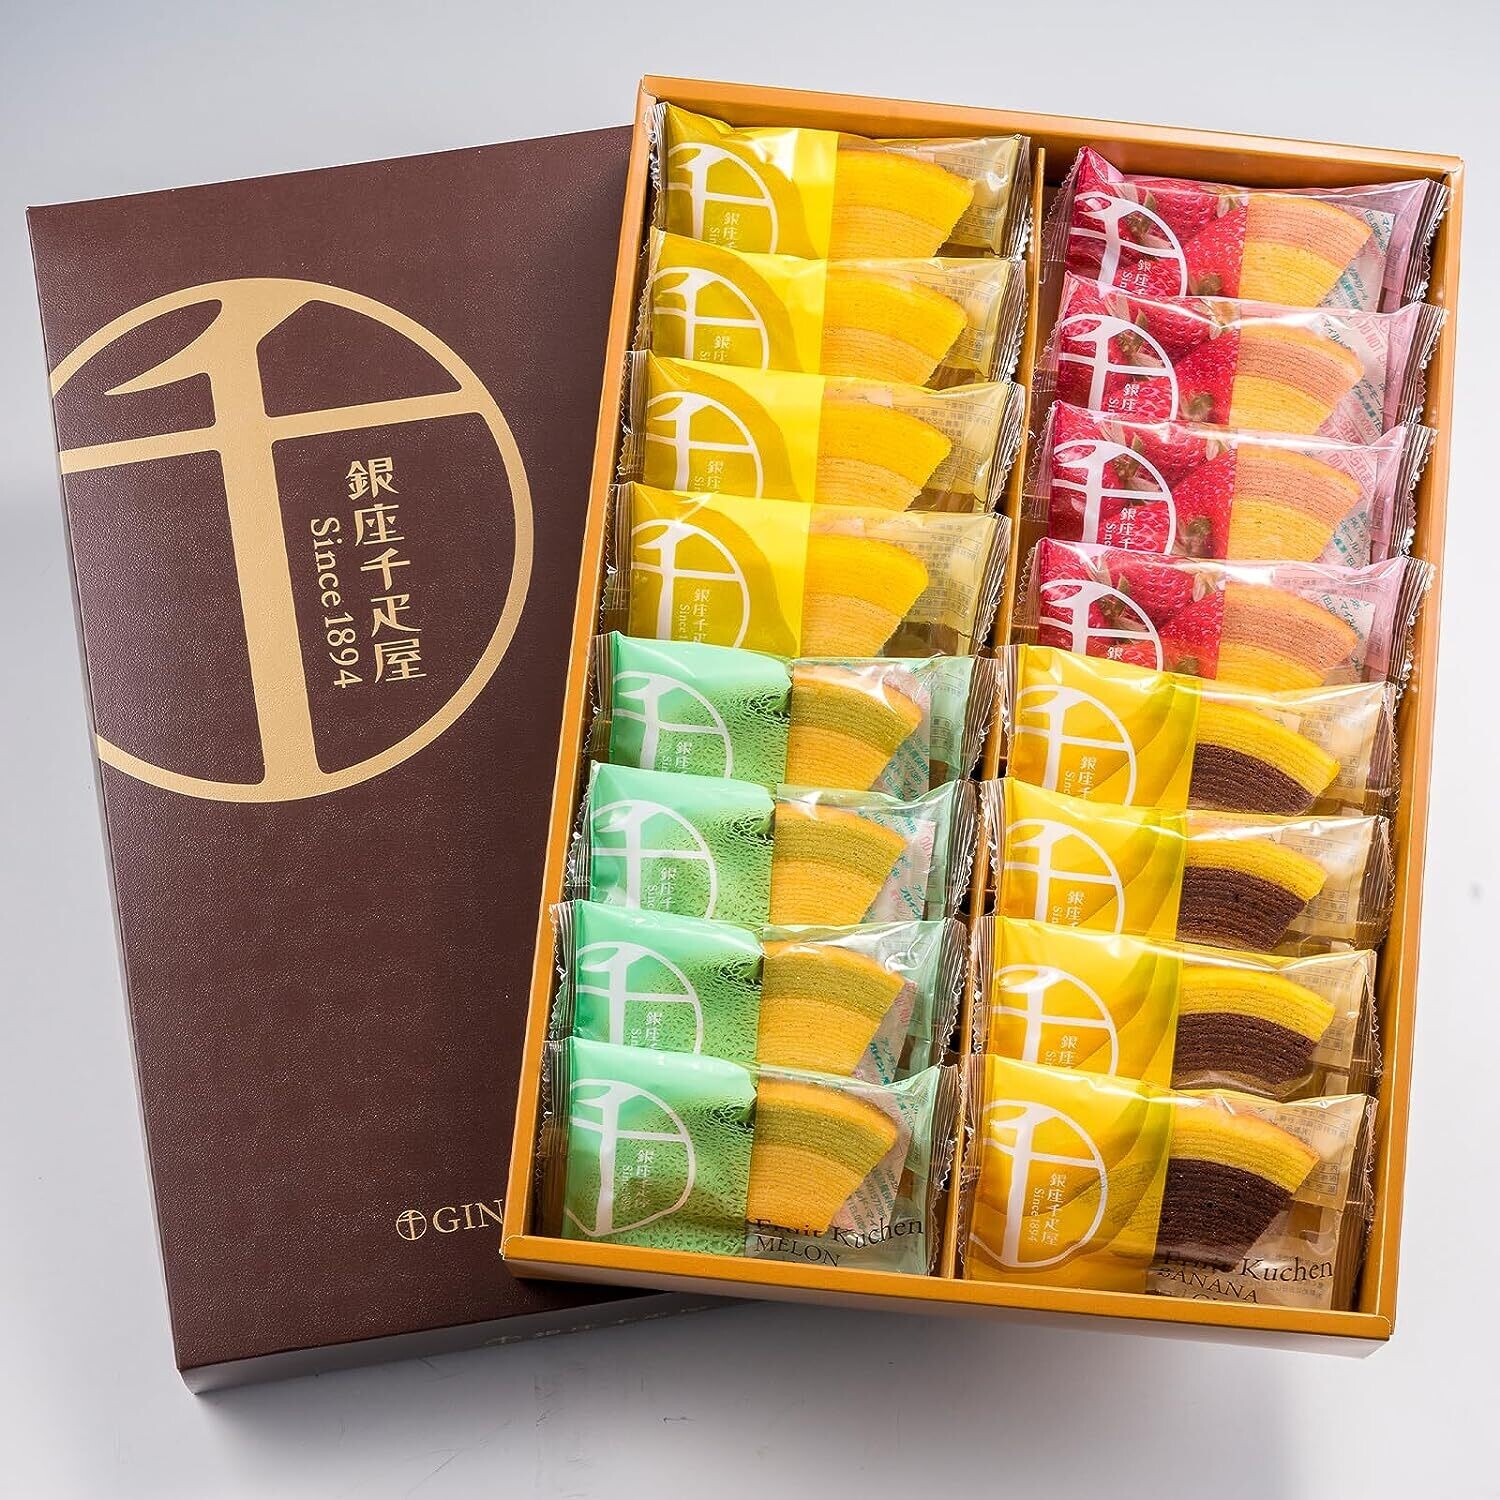 Ginza Senbikiya, Fruits Baum Cake, 16 pcs in 1 box, For a Gift